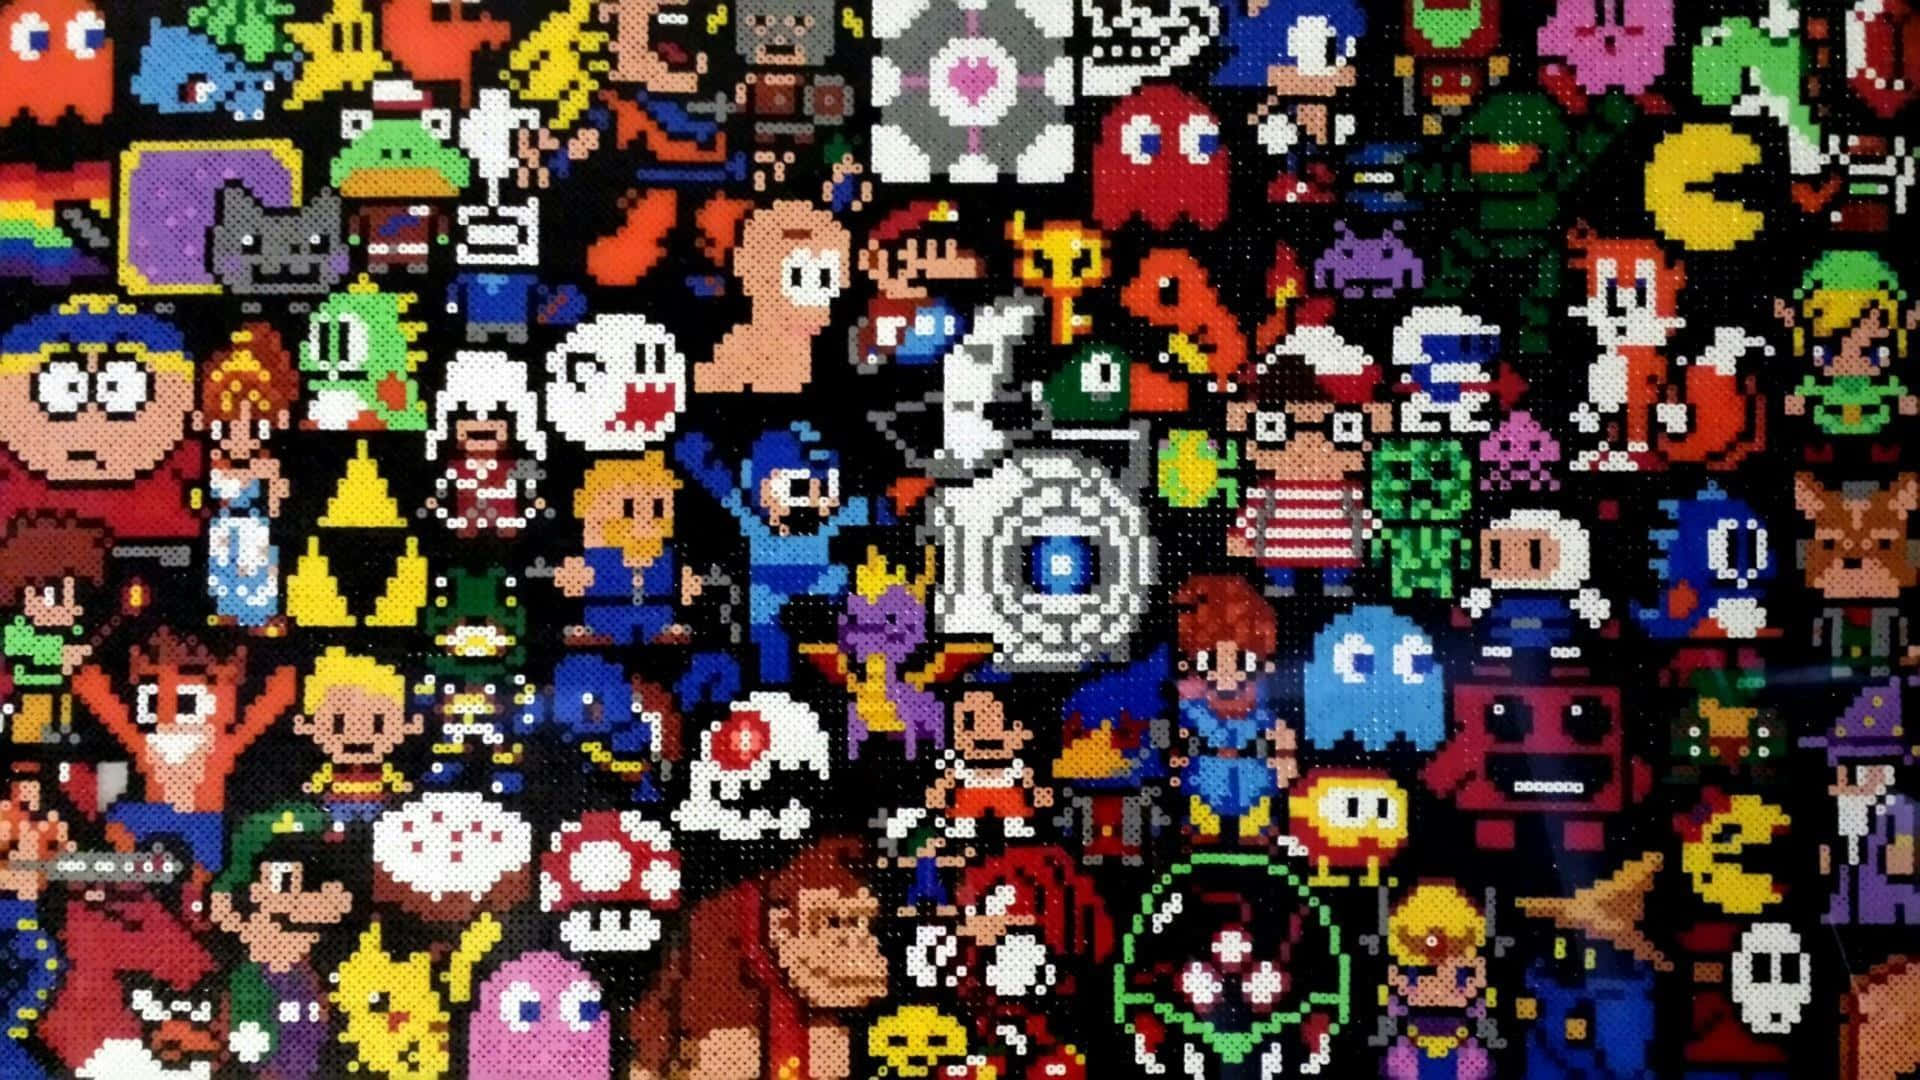 HD wallpaper: vintage, video games, retro games, Super Mario Bros., multi  colored